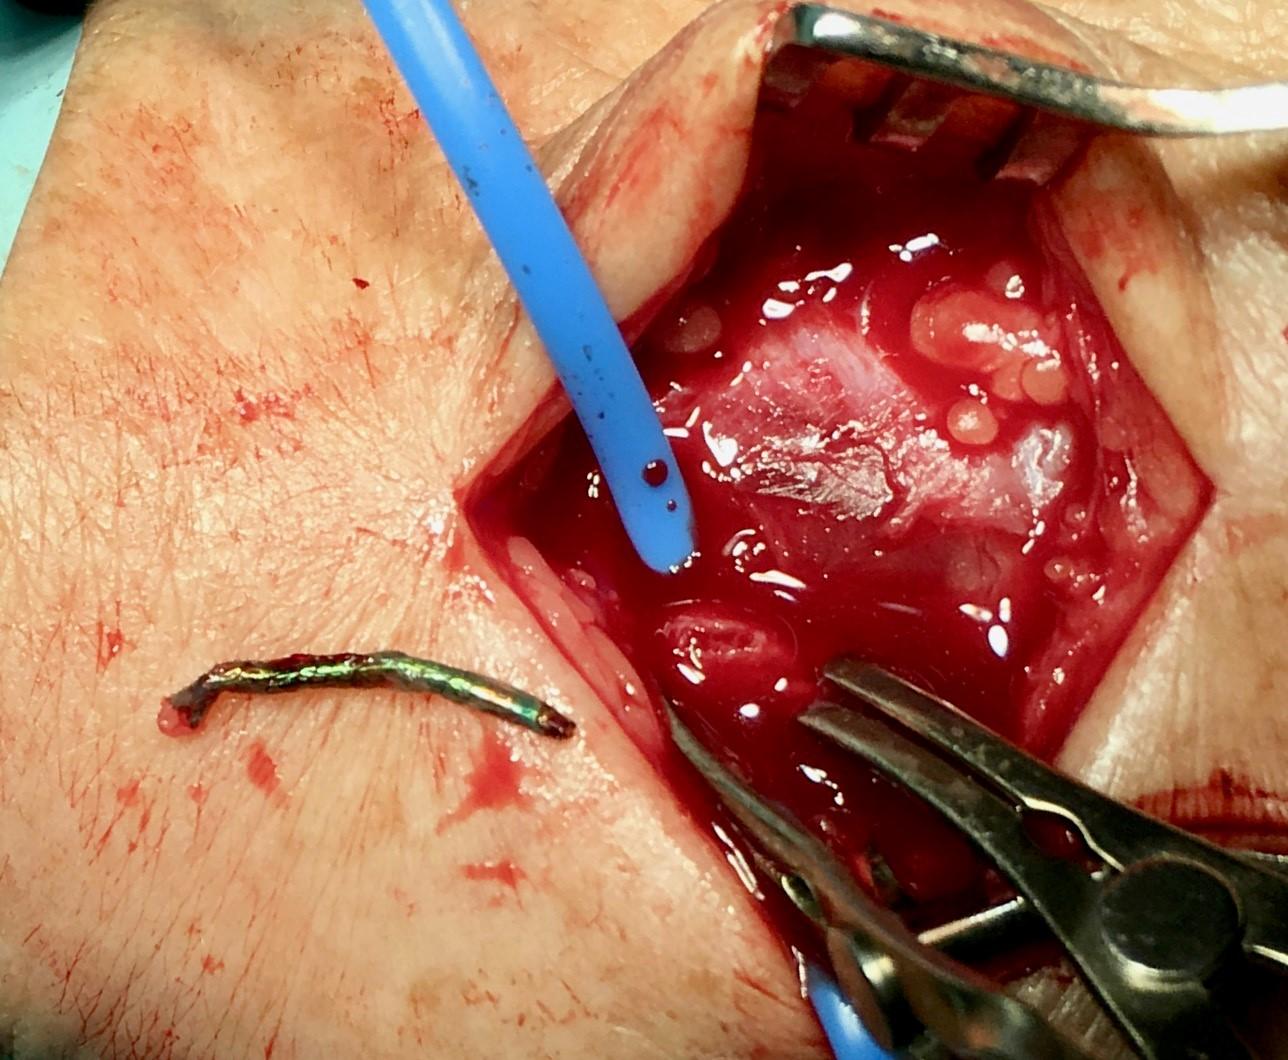 Den fjernede stent under operationen i venstre hånd.